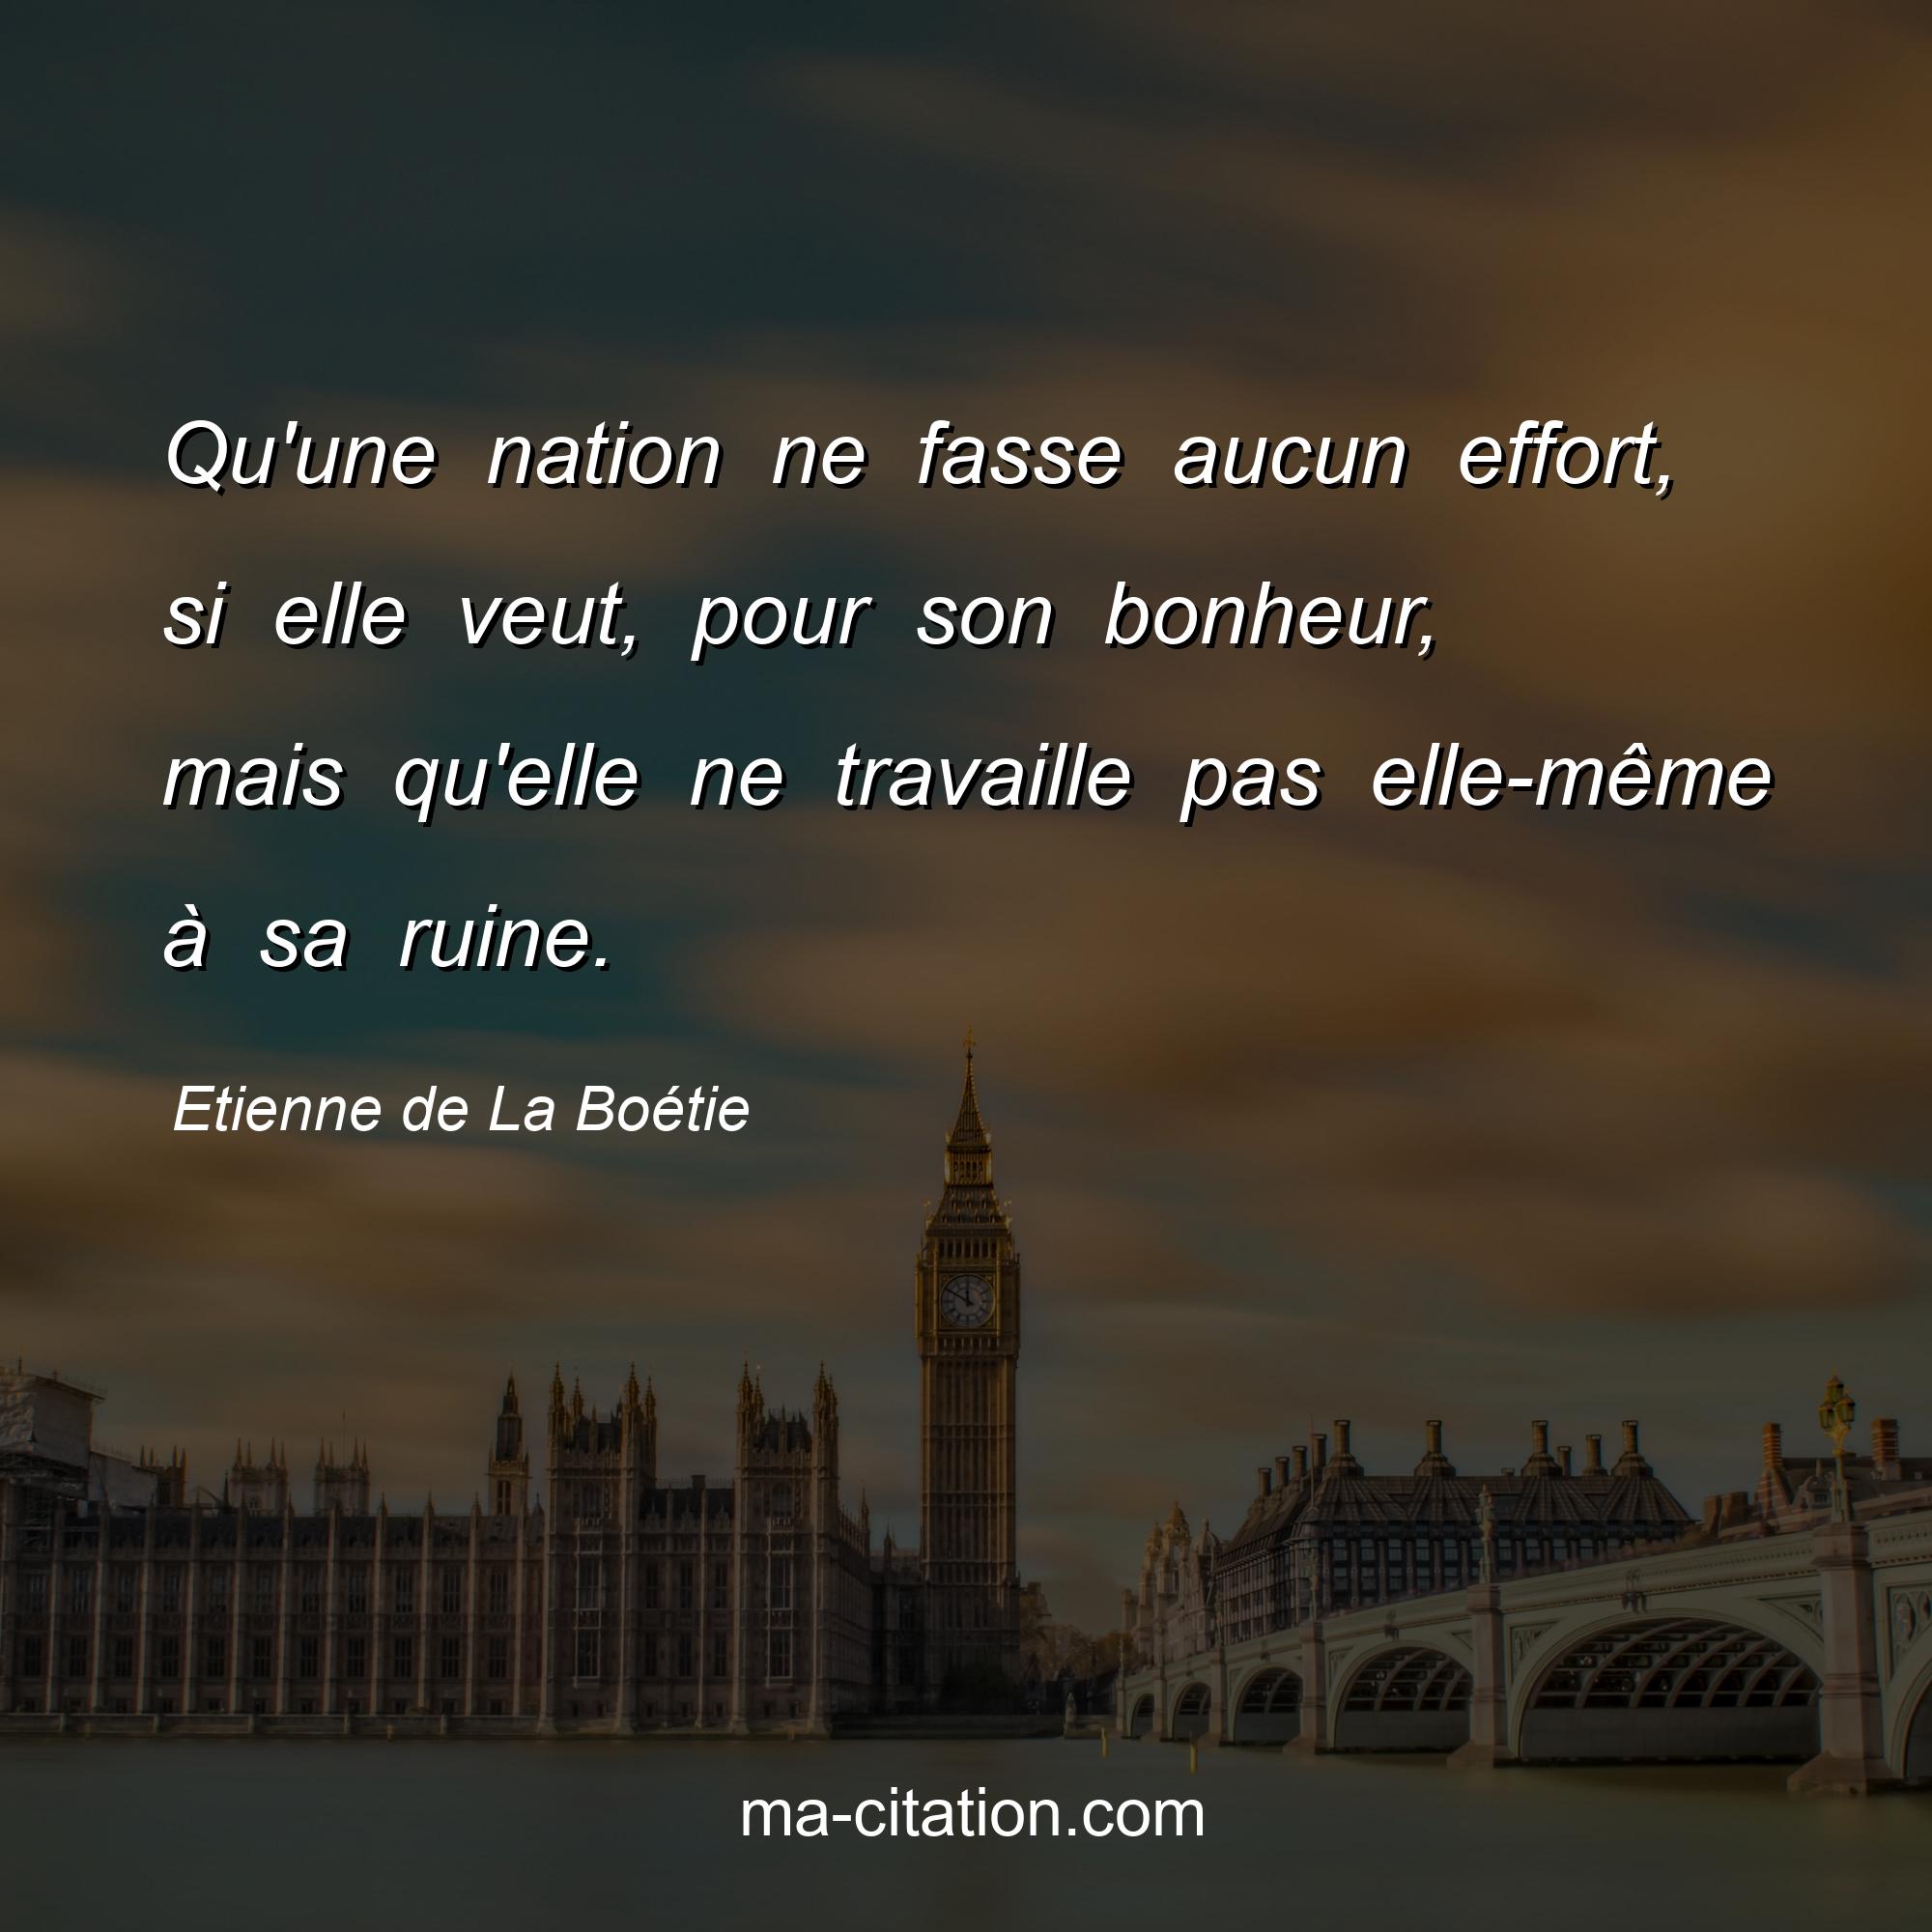 Etienne de La Boétie : Qu'une nation ne fasse aucun effort, si elle veut, pour son bonheur, mais qu'elle ne travaille pas elle-même à sa ruine.